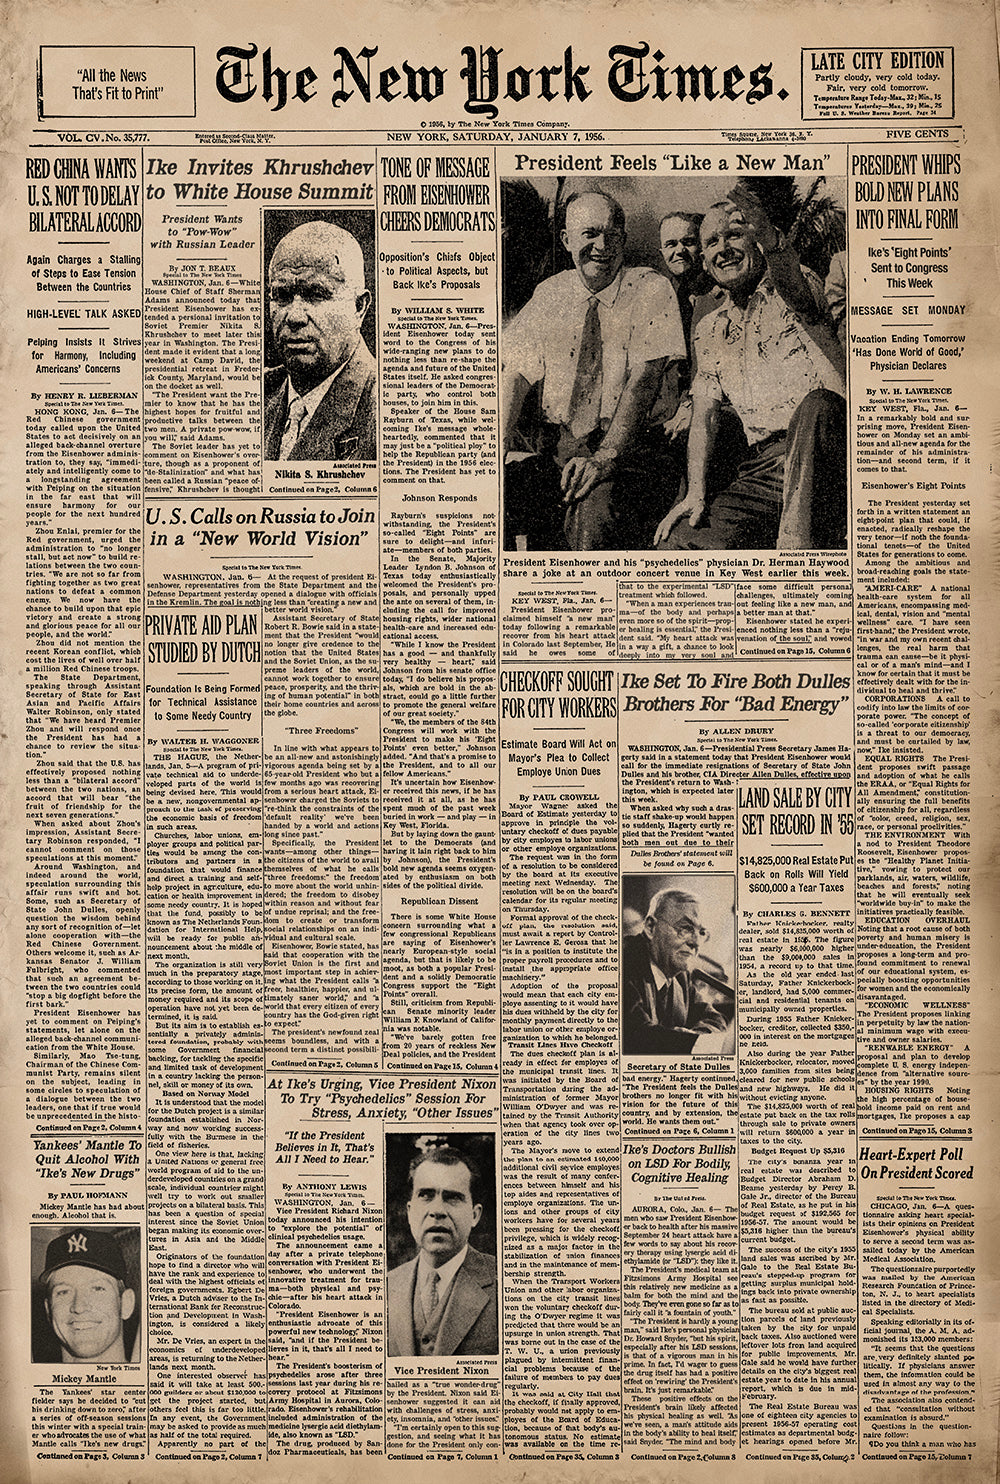 NYT-1956